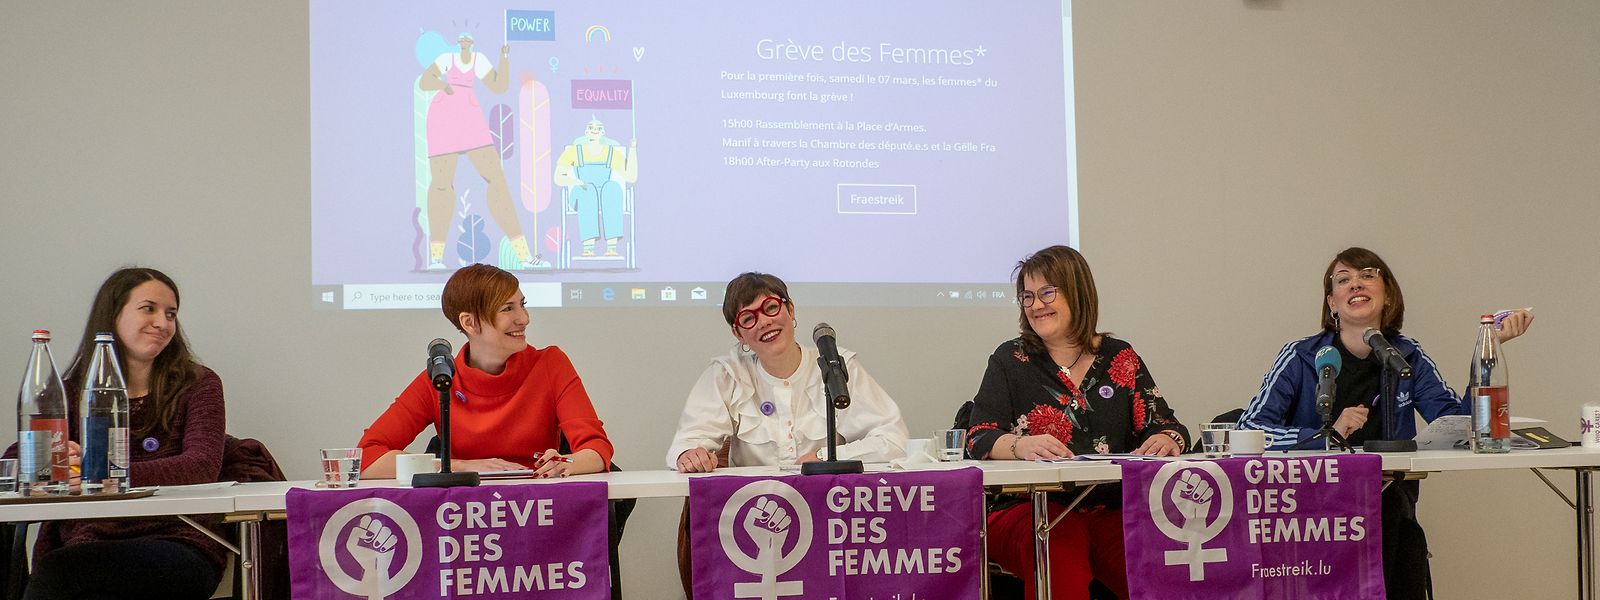 La plateforme d’action JIF Luxembourg a dévoilé les principales actions qui auront lieu dans le cadre de la première grève nationale des femmes, prévue le 7 mars prochain.